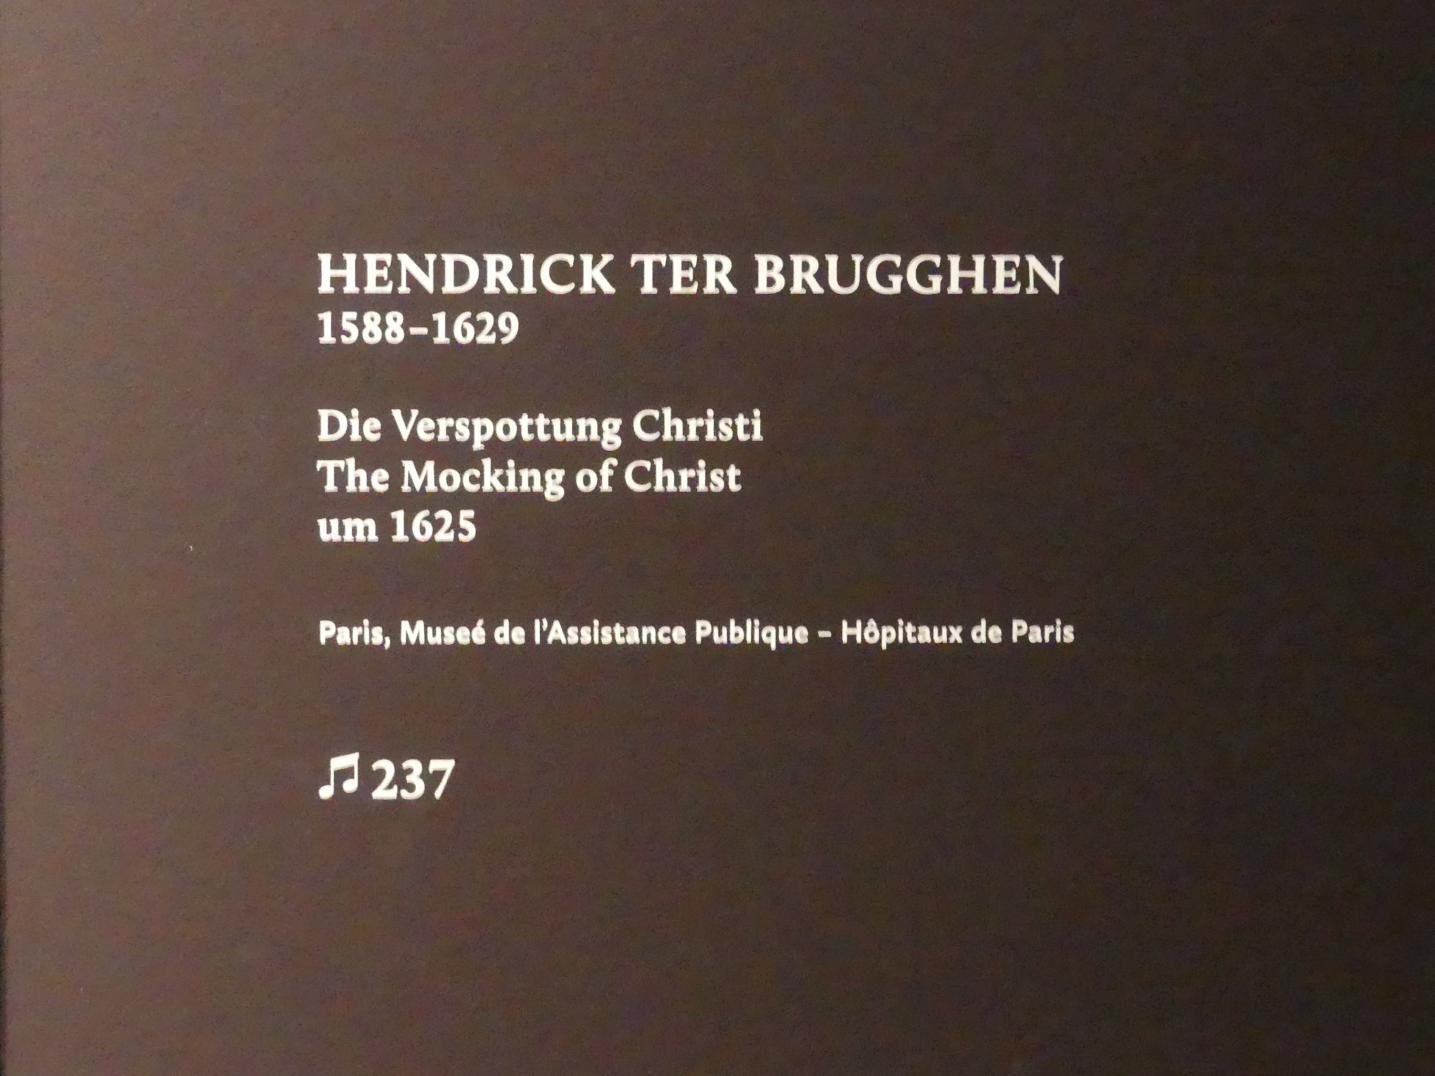 Hendrick ter Brugghen (1616–1629), Die Verspottung Christi, München, Alte Pinakothek, Ausstellung "Utrecht, Caravaggio und Europa" vom 17.04.-21.07.2019, Christus: Verspottung Christi, um 1625, Bild 2/2